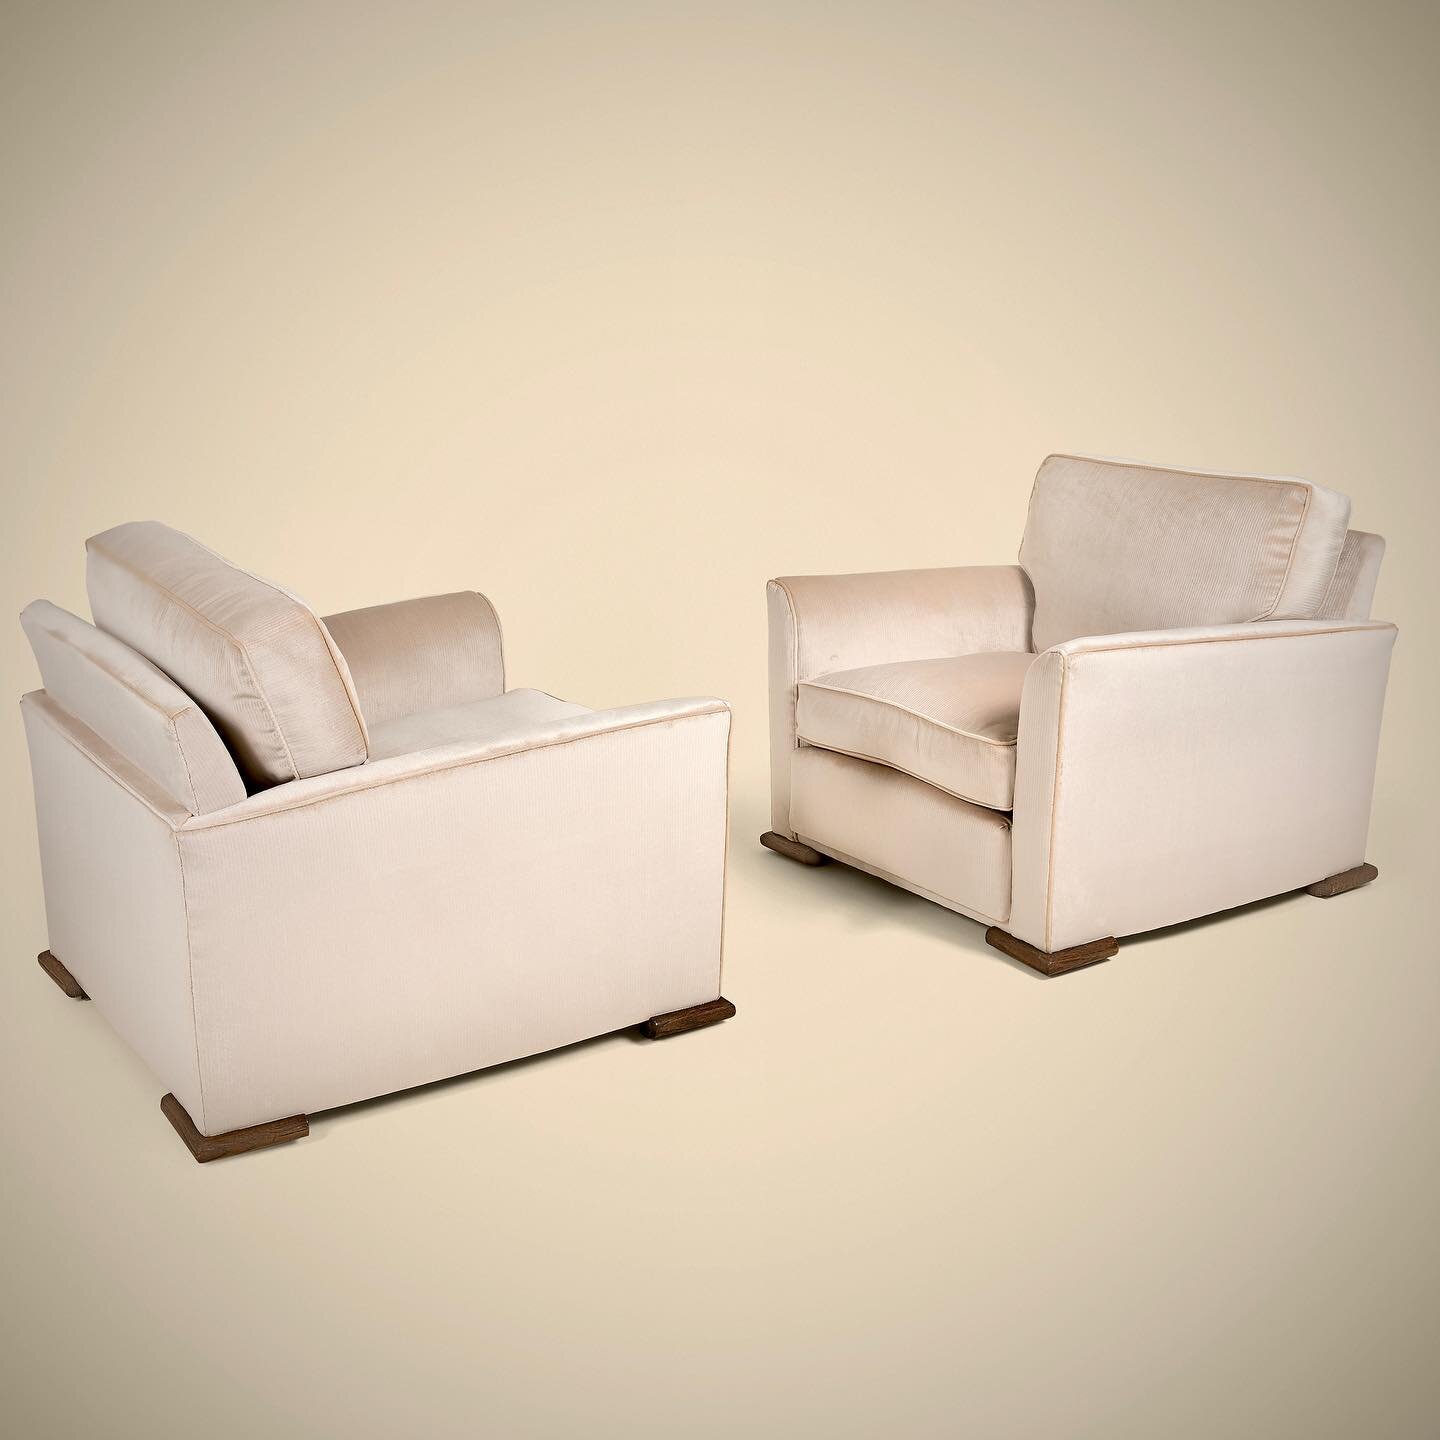 Paul DUPRE LAFON, pair of armchairs, circa 1947
Available @galeriemathivet 

#duprelafond #paulduprelafon #artdeco #artdecoarmchairs #1930s #artdecocollection #collectibledesing #tefaf2024 #padparis #pad2024 #tefaf #furniture #furnituredesign #french